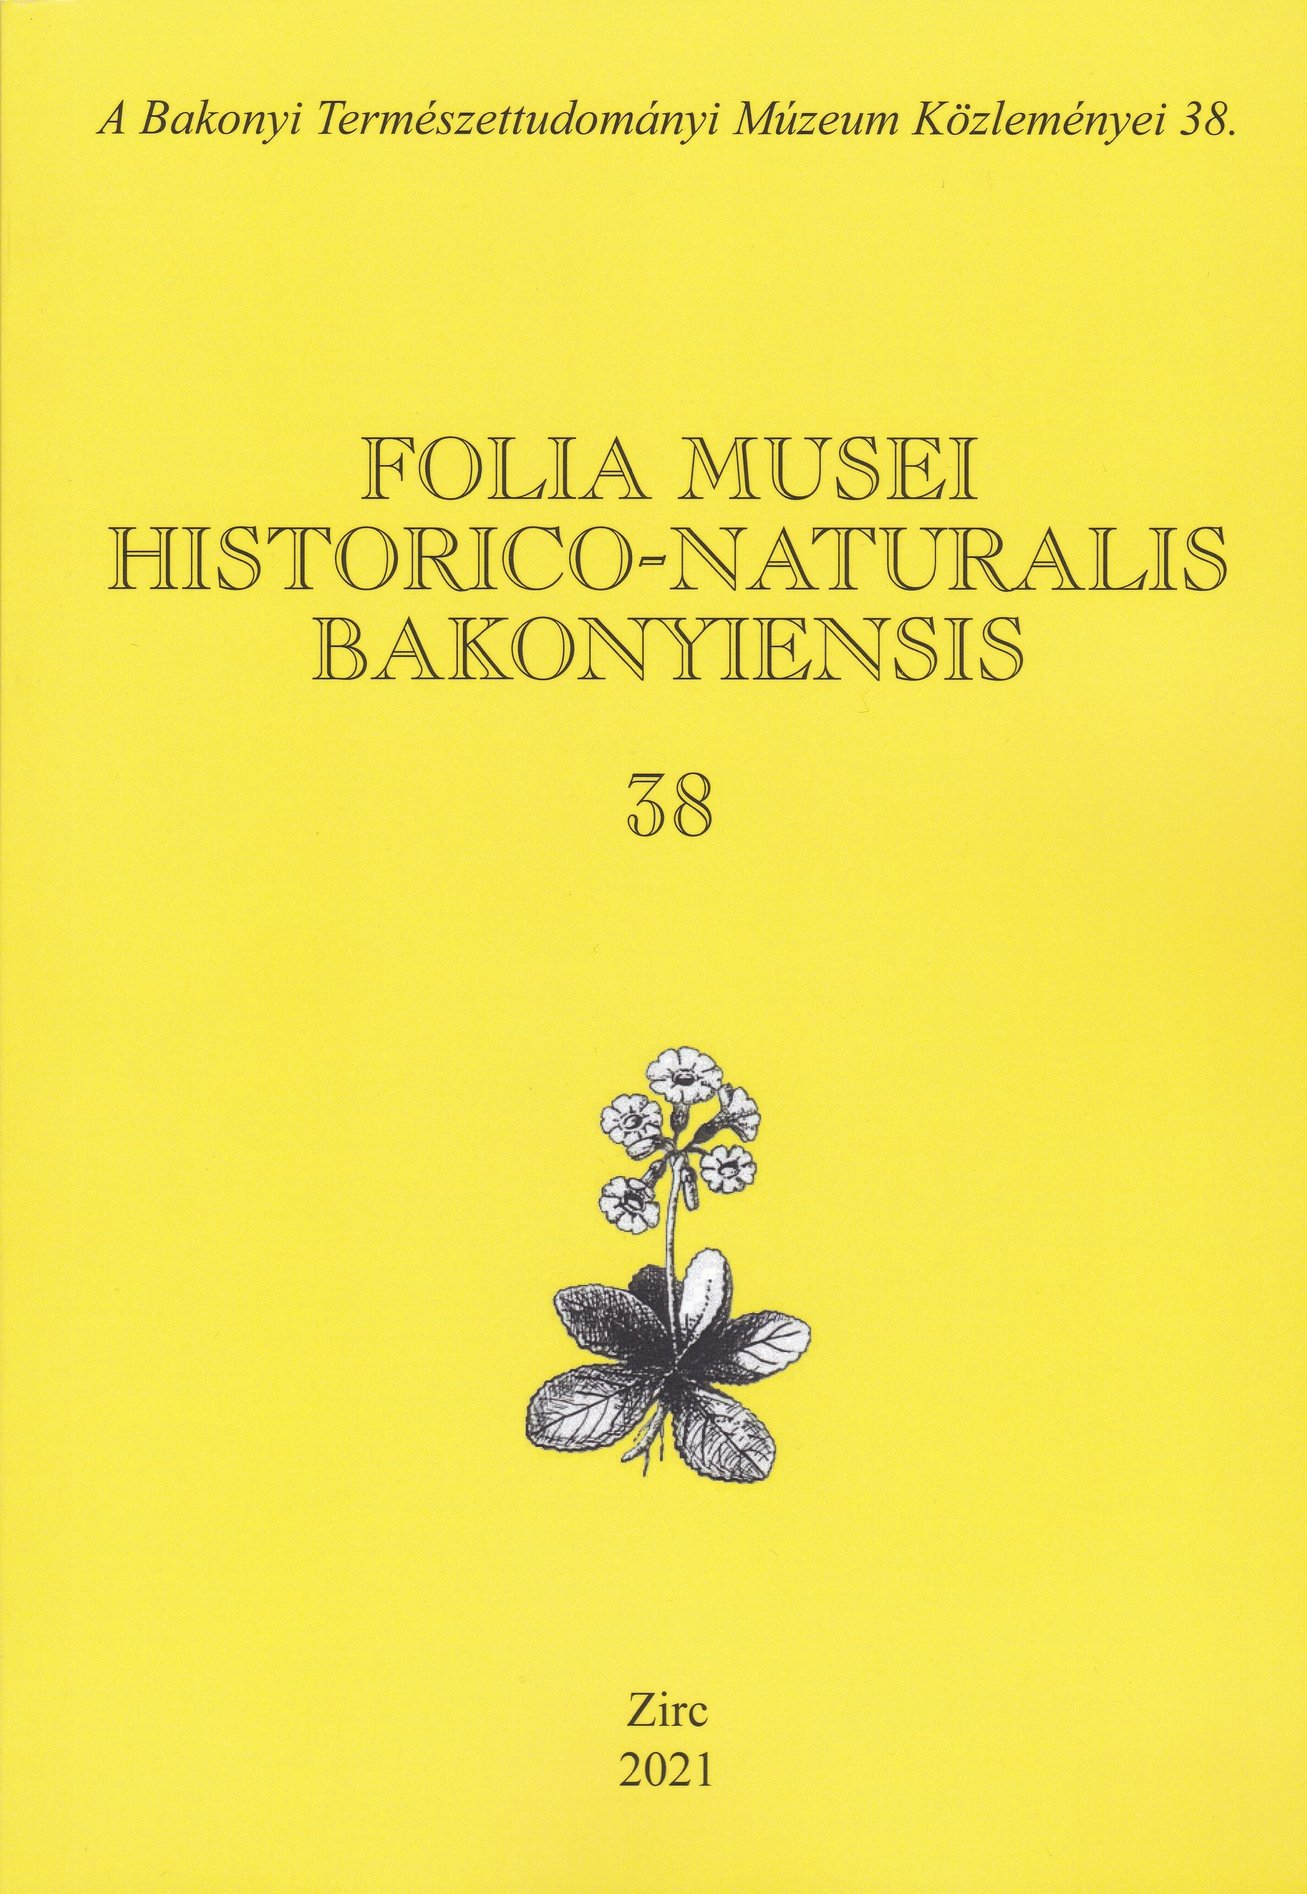 Folia Musei Historico-Naturalis Bakonyiensis. A Bakonyi Természettudományi Múzeum Közleményei 2021/38. (Rippl-Rónai Múzeum CC BY-NC-ND)